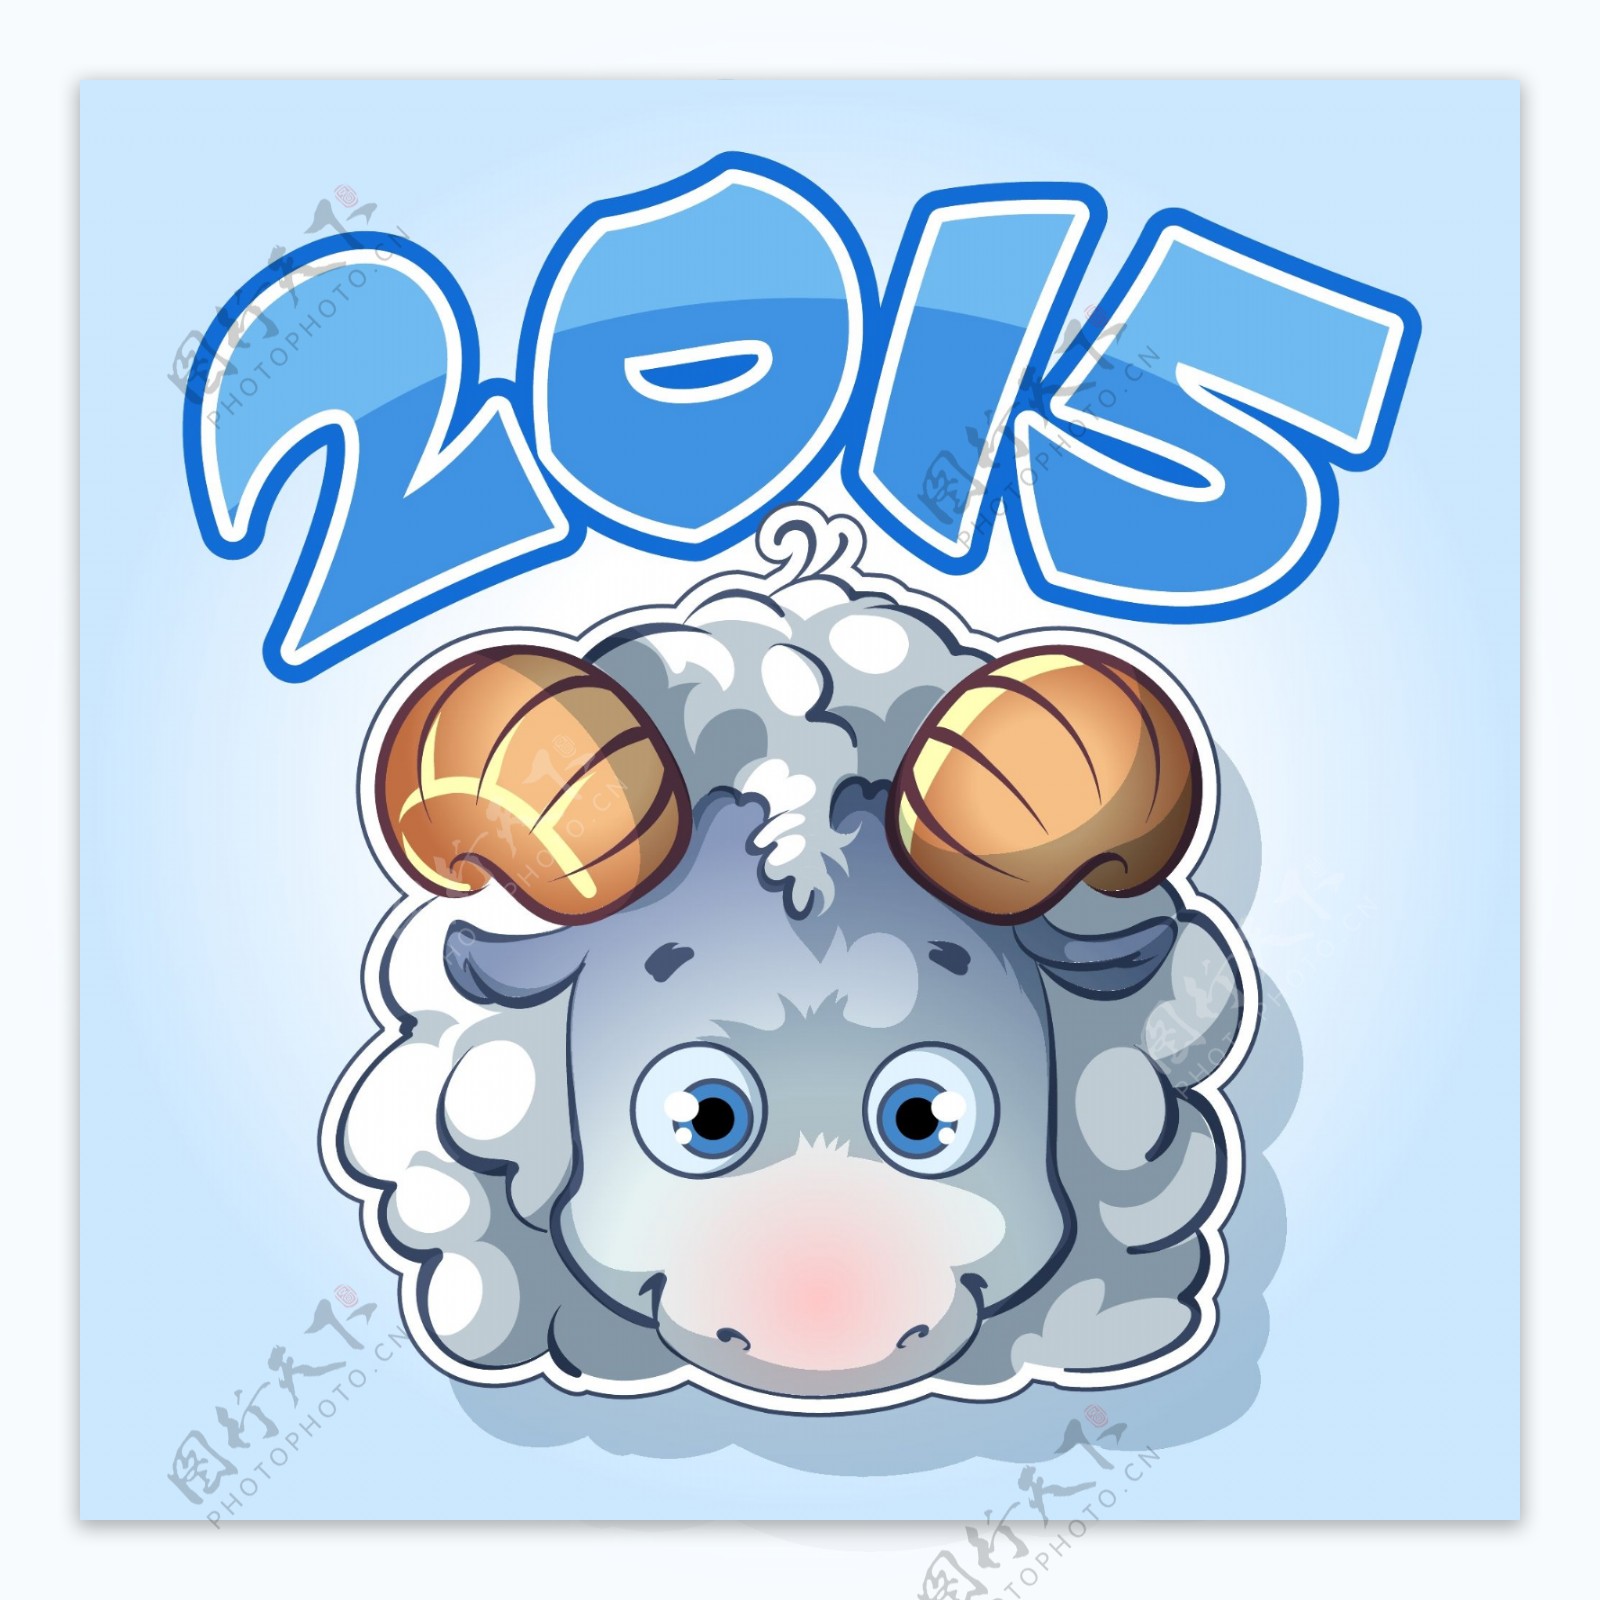 2015可爱卡通绵羊设计矢量素材